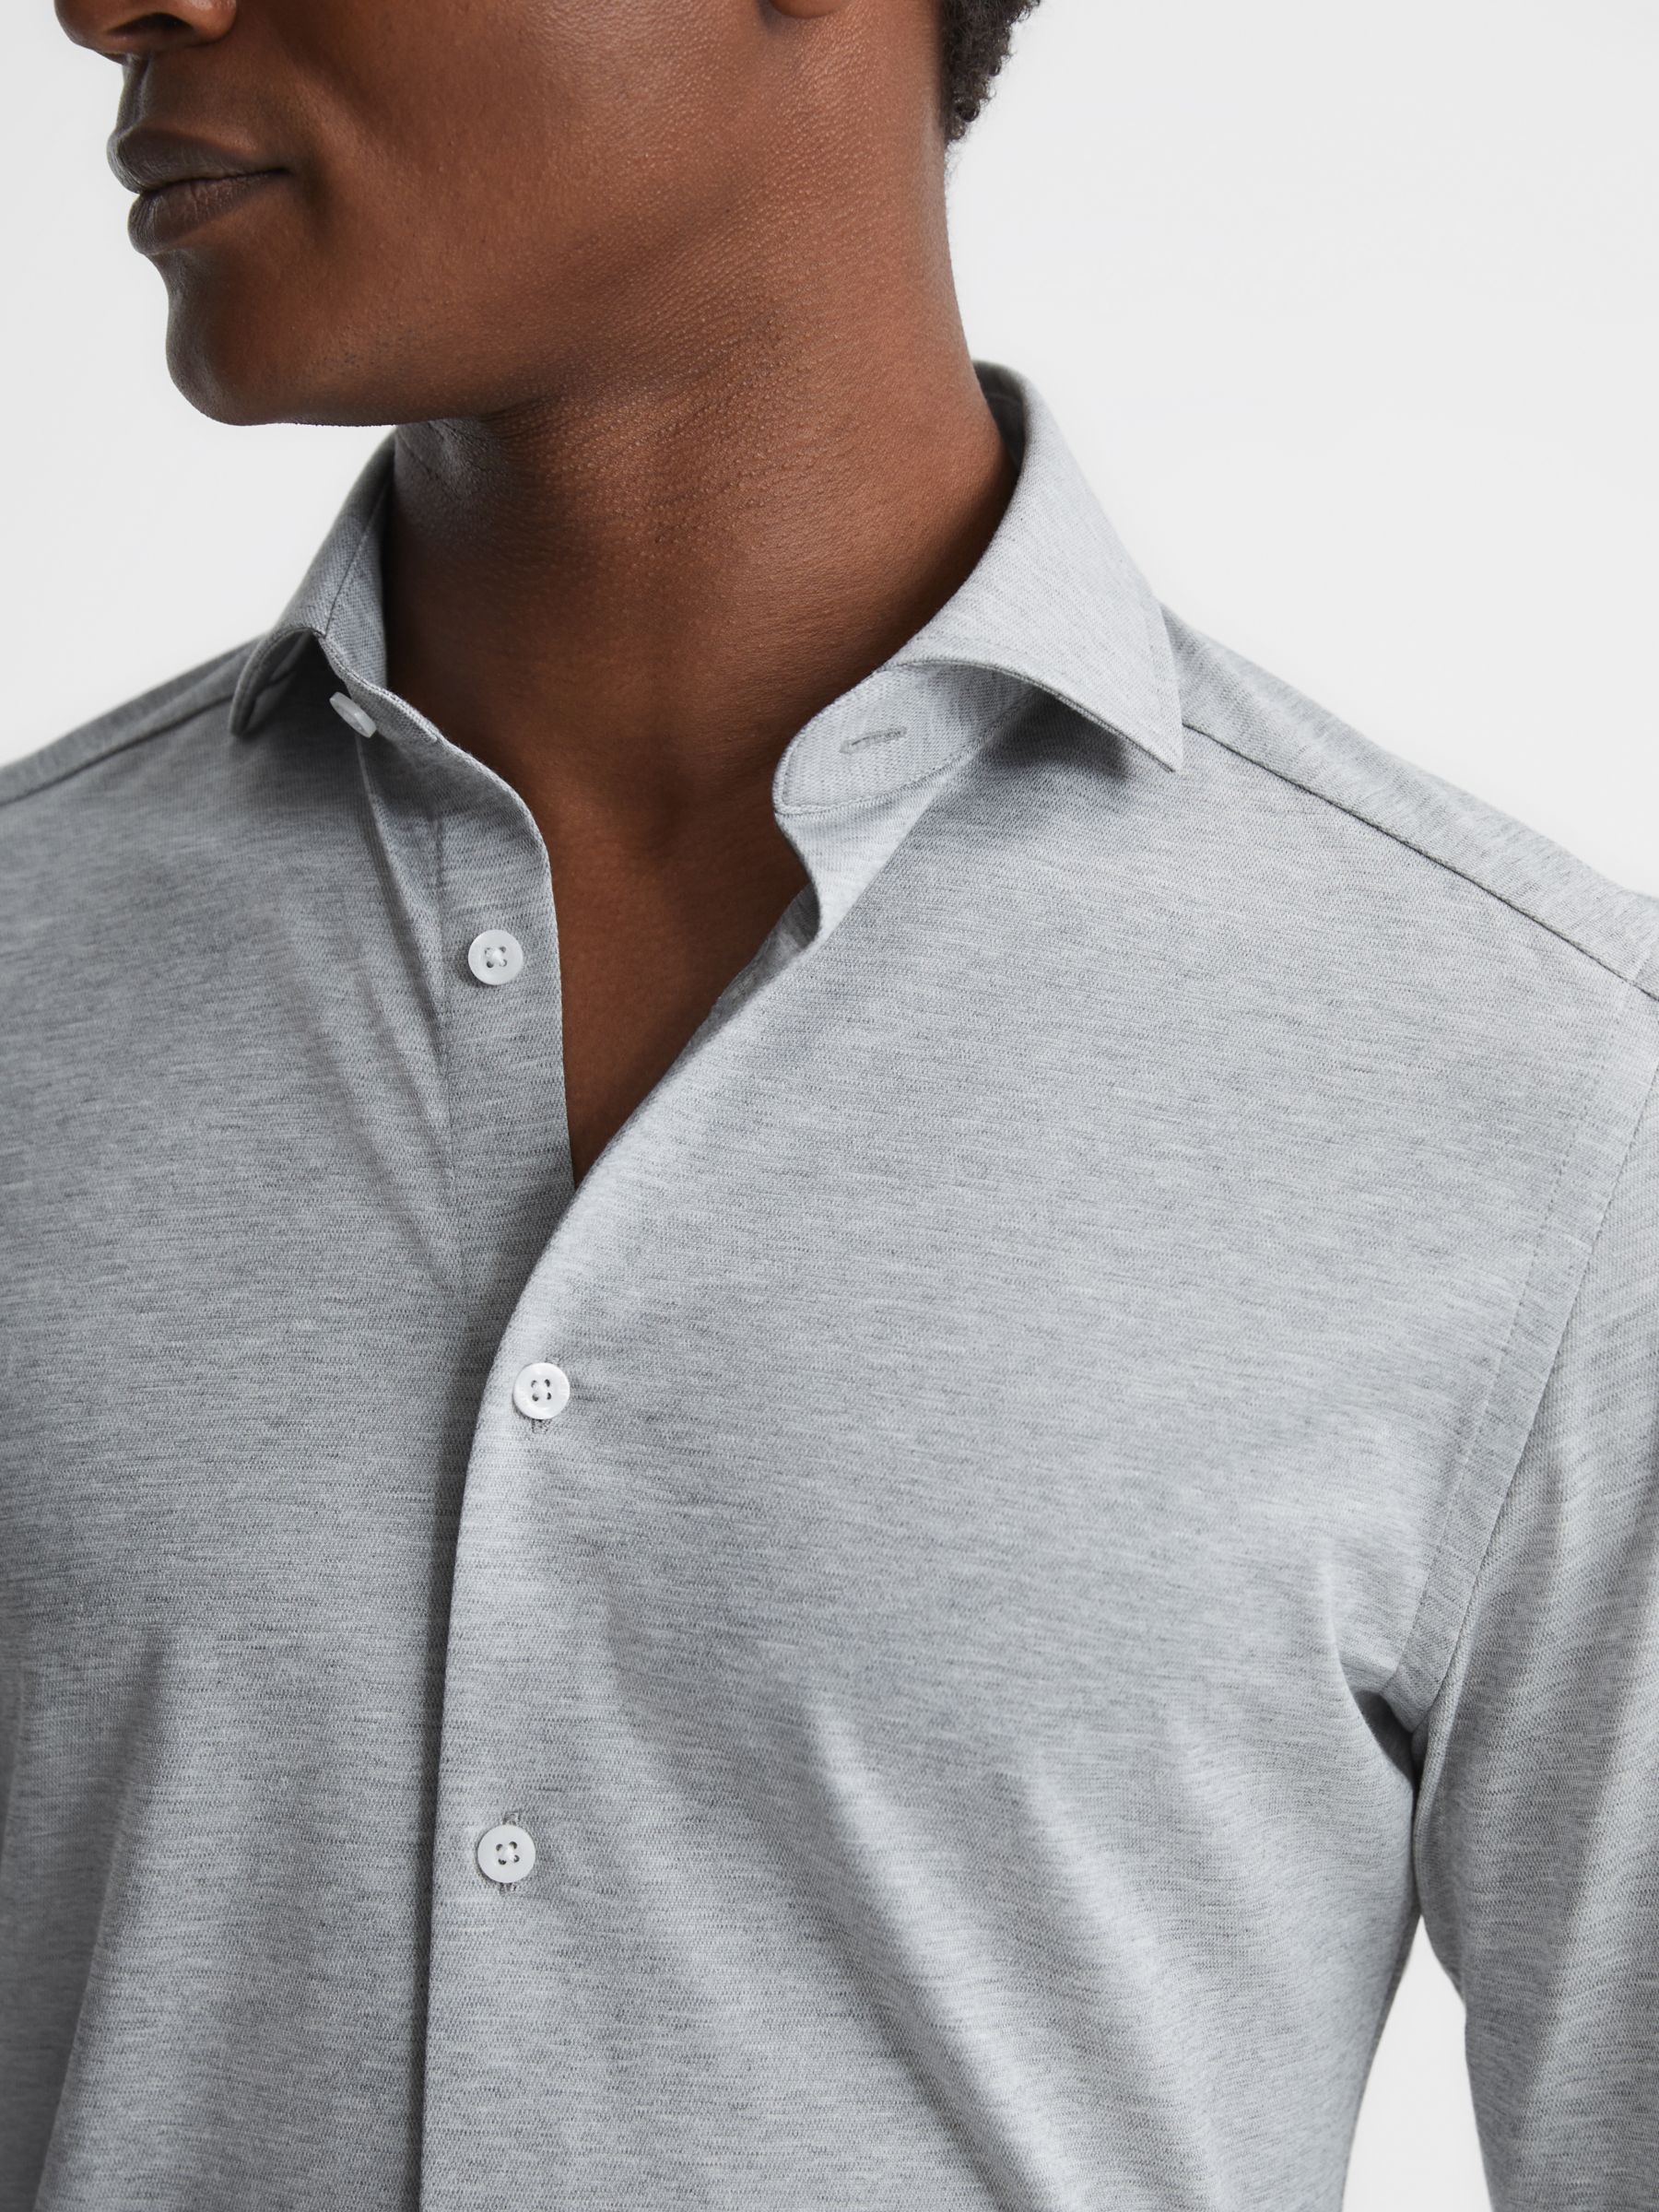 Reiss Nate Cutaway Collar Slim Fit Jersey Shirt, Grey Melange, XS